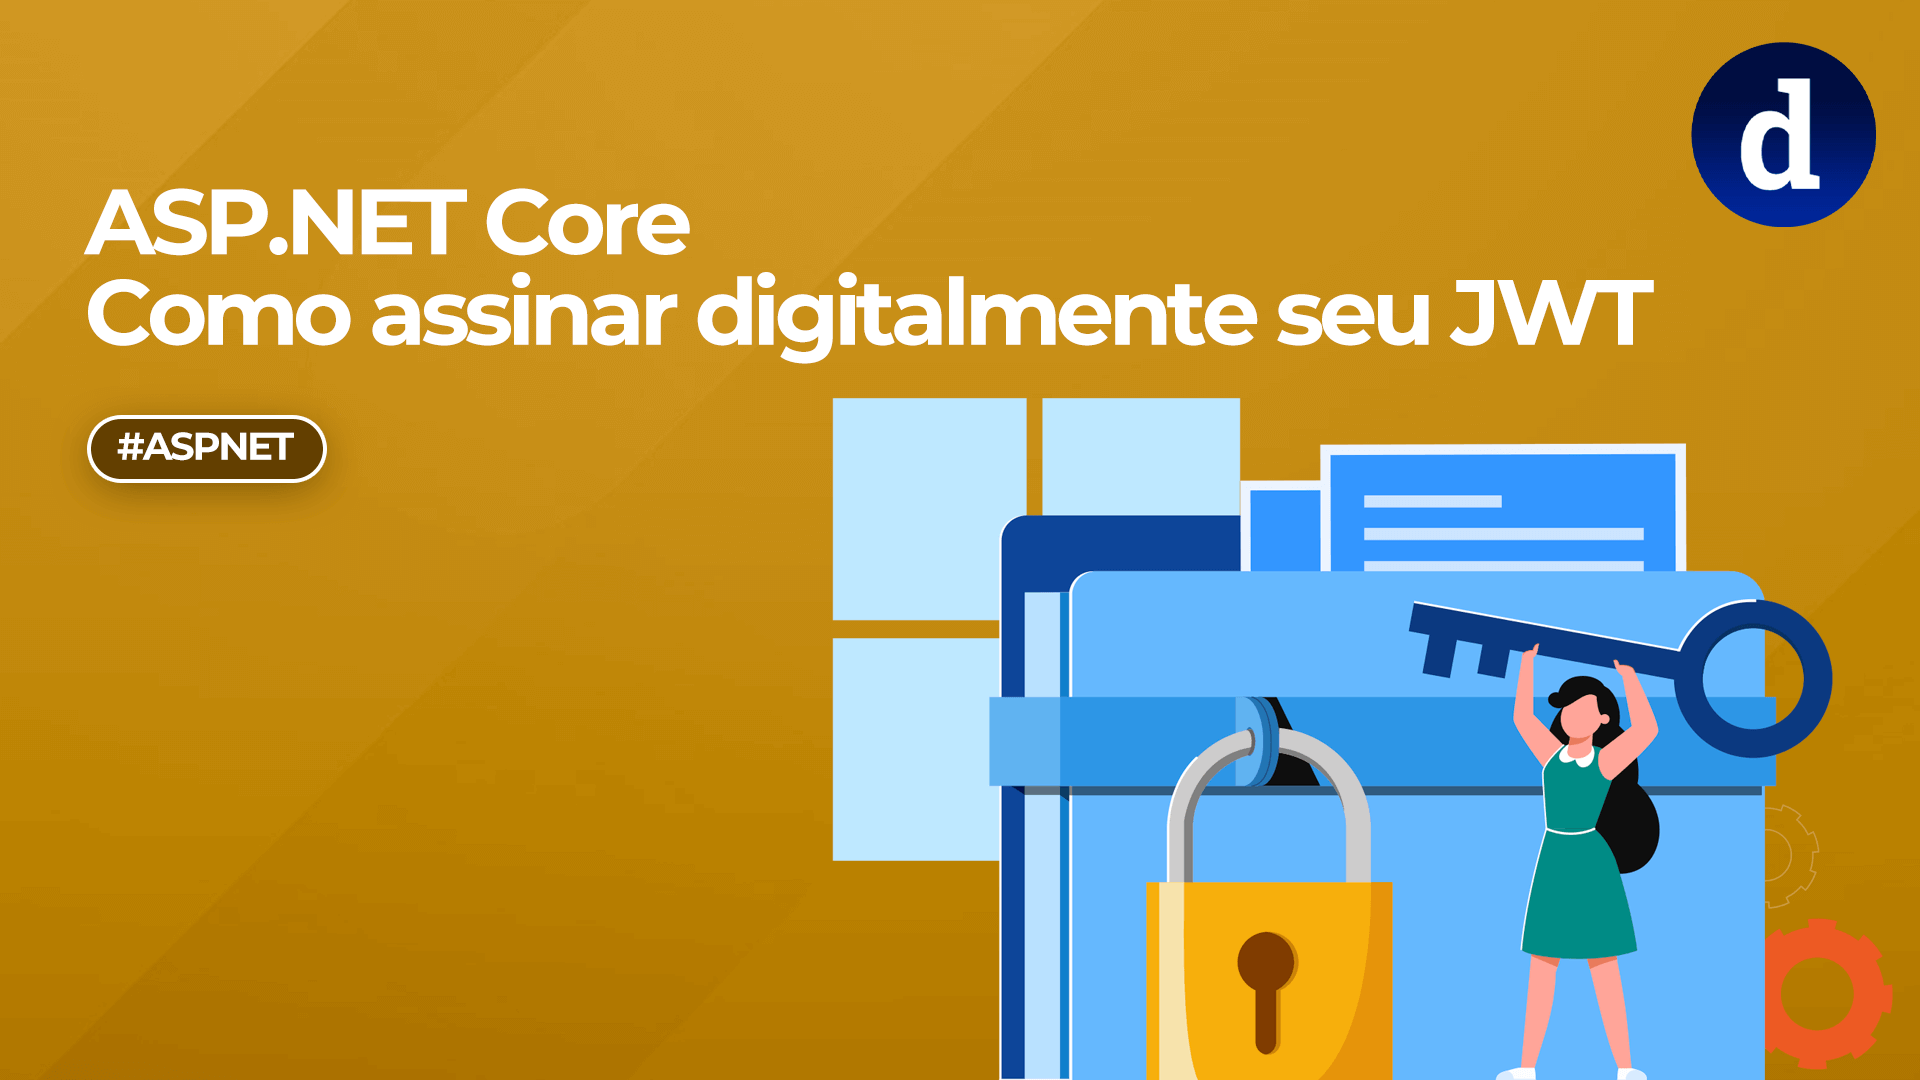 ASP.NET Core - Como assinar digitalmente seu JWT